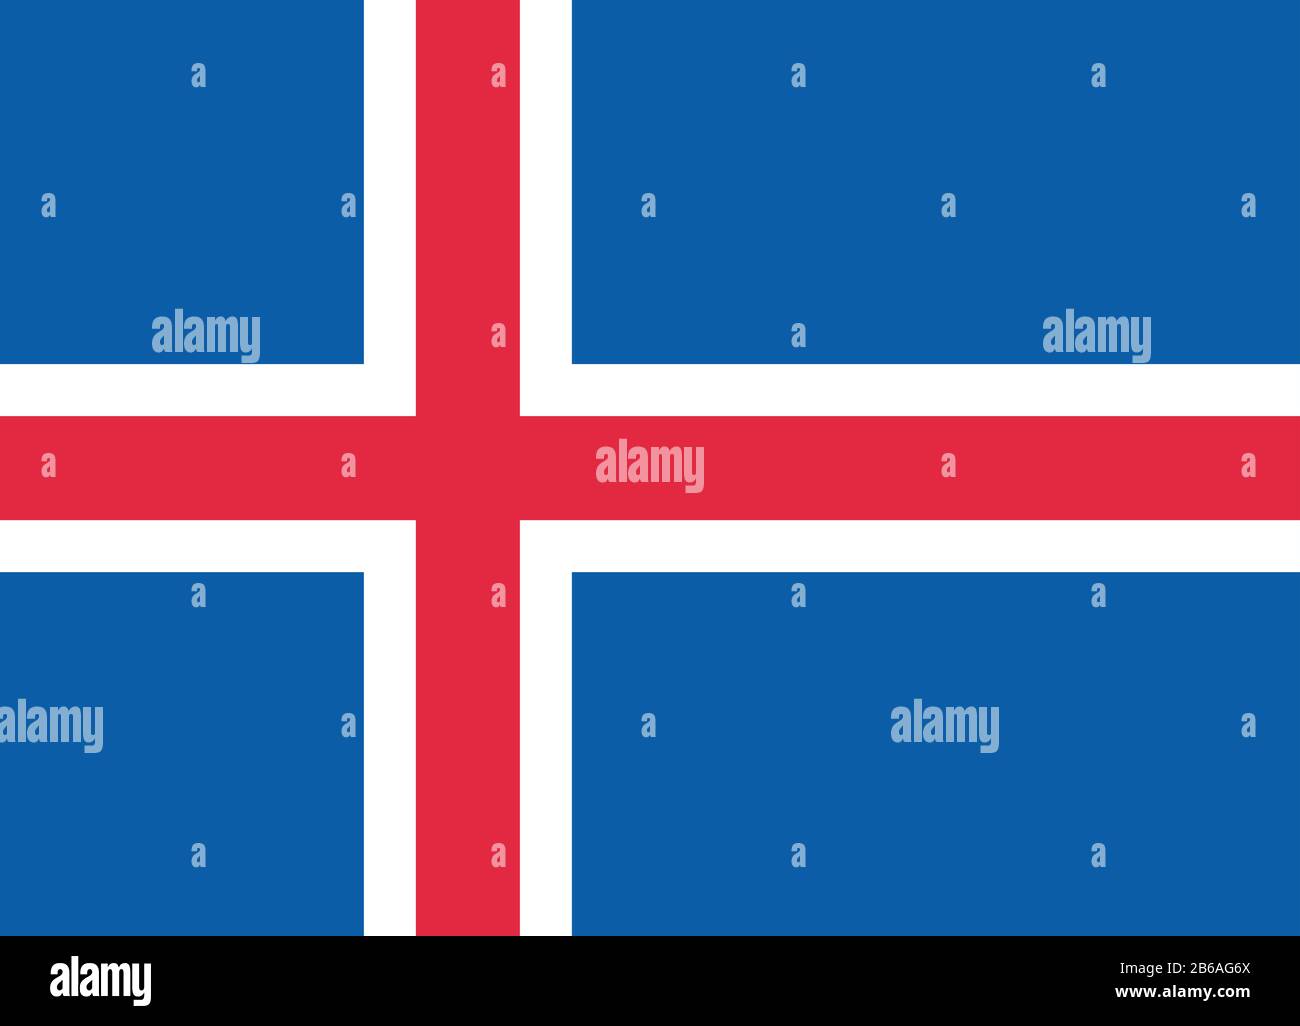 Flagge von Island - Standardverhältnis der isländischen Flagge - True RGB-Farbmodus Stockfoto